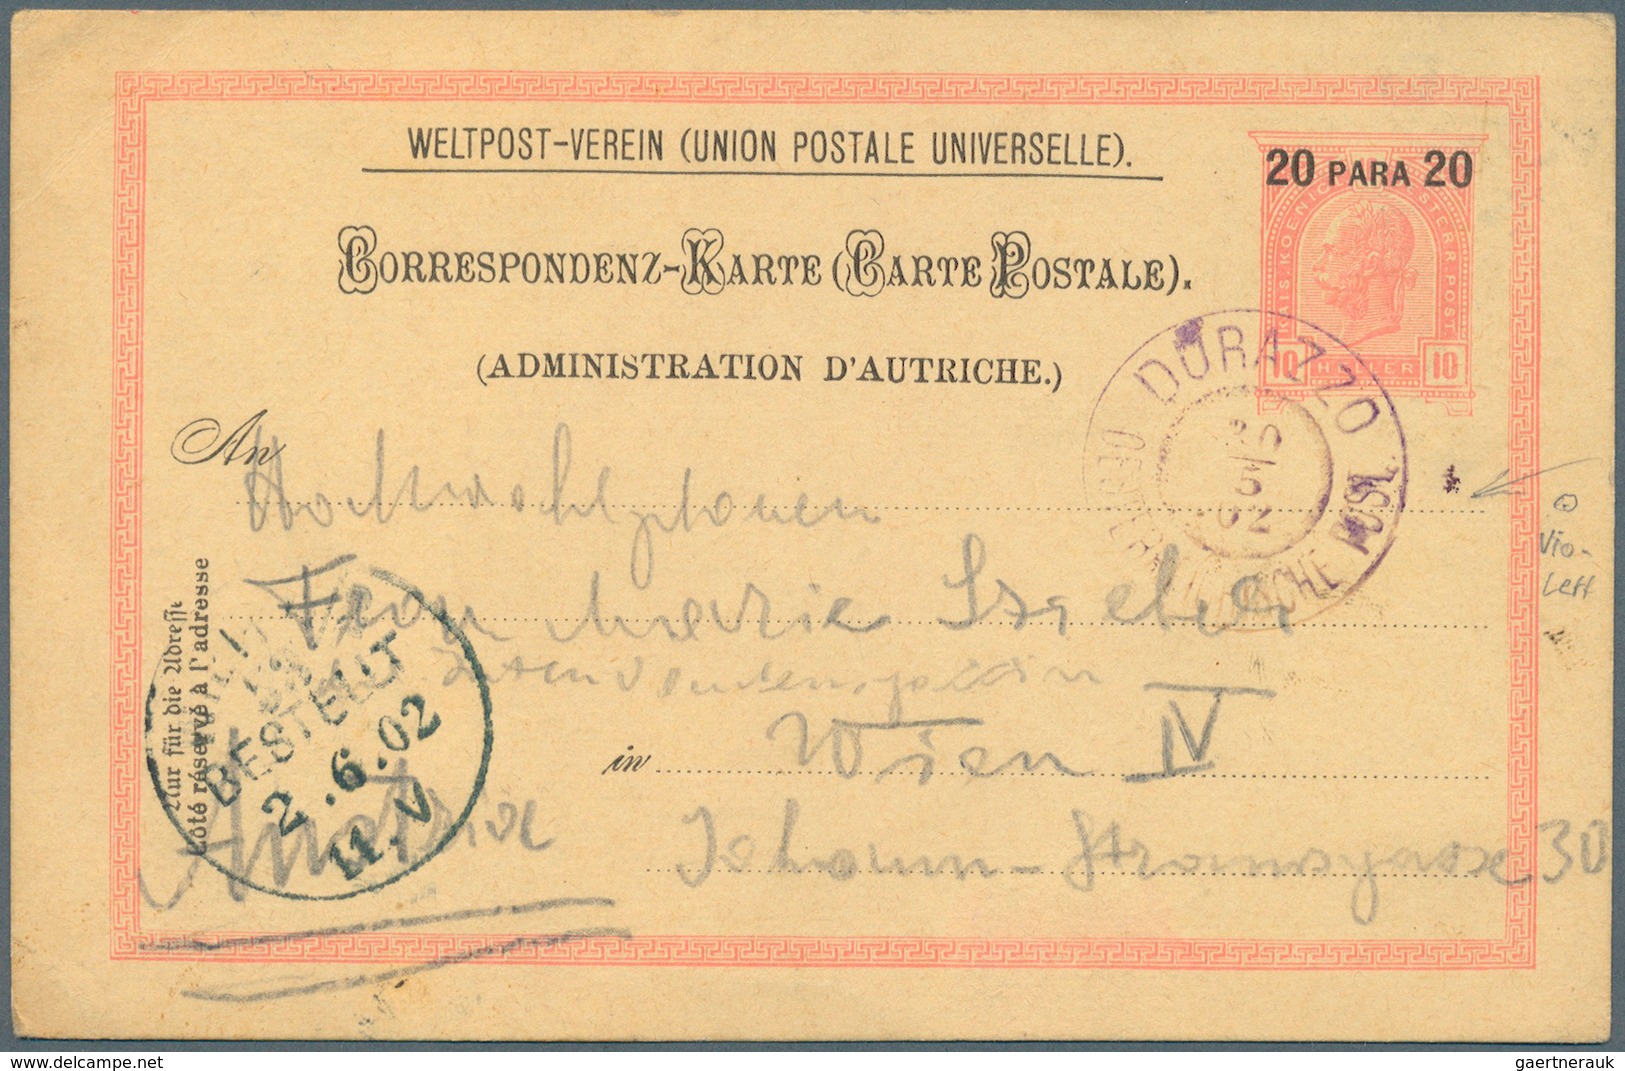 27644 Österreichische Post in der Levante: 1866/1918, 22 Belege ohne Constantinpel und Smyrna, dabei u. a.